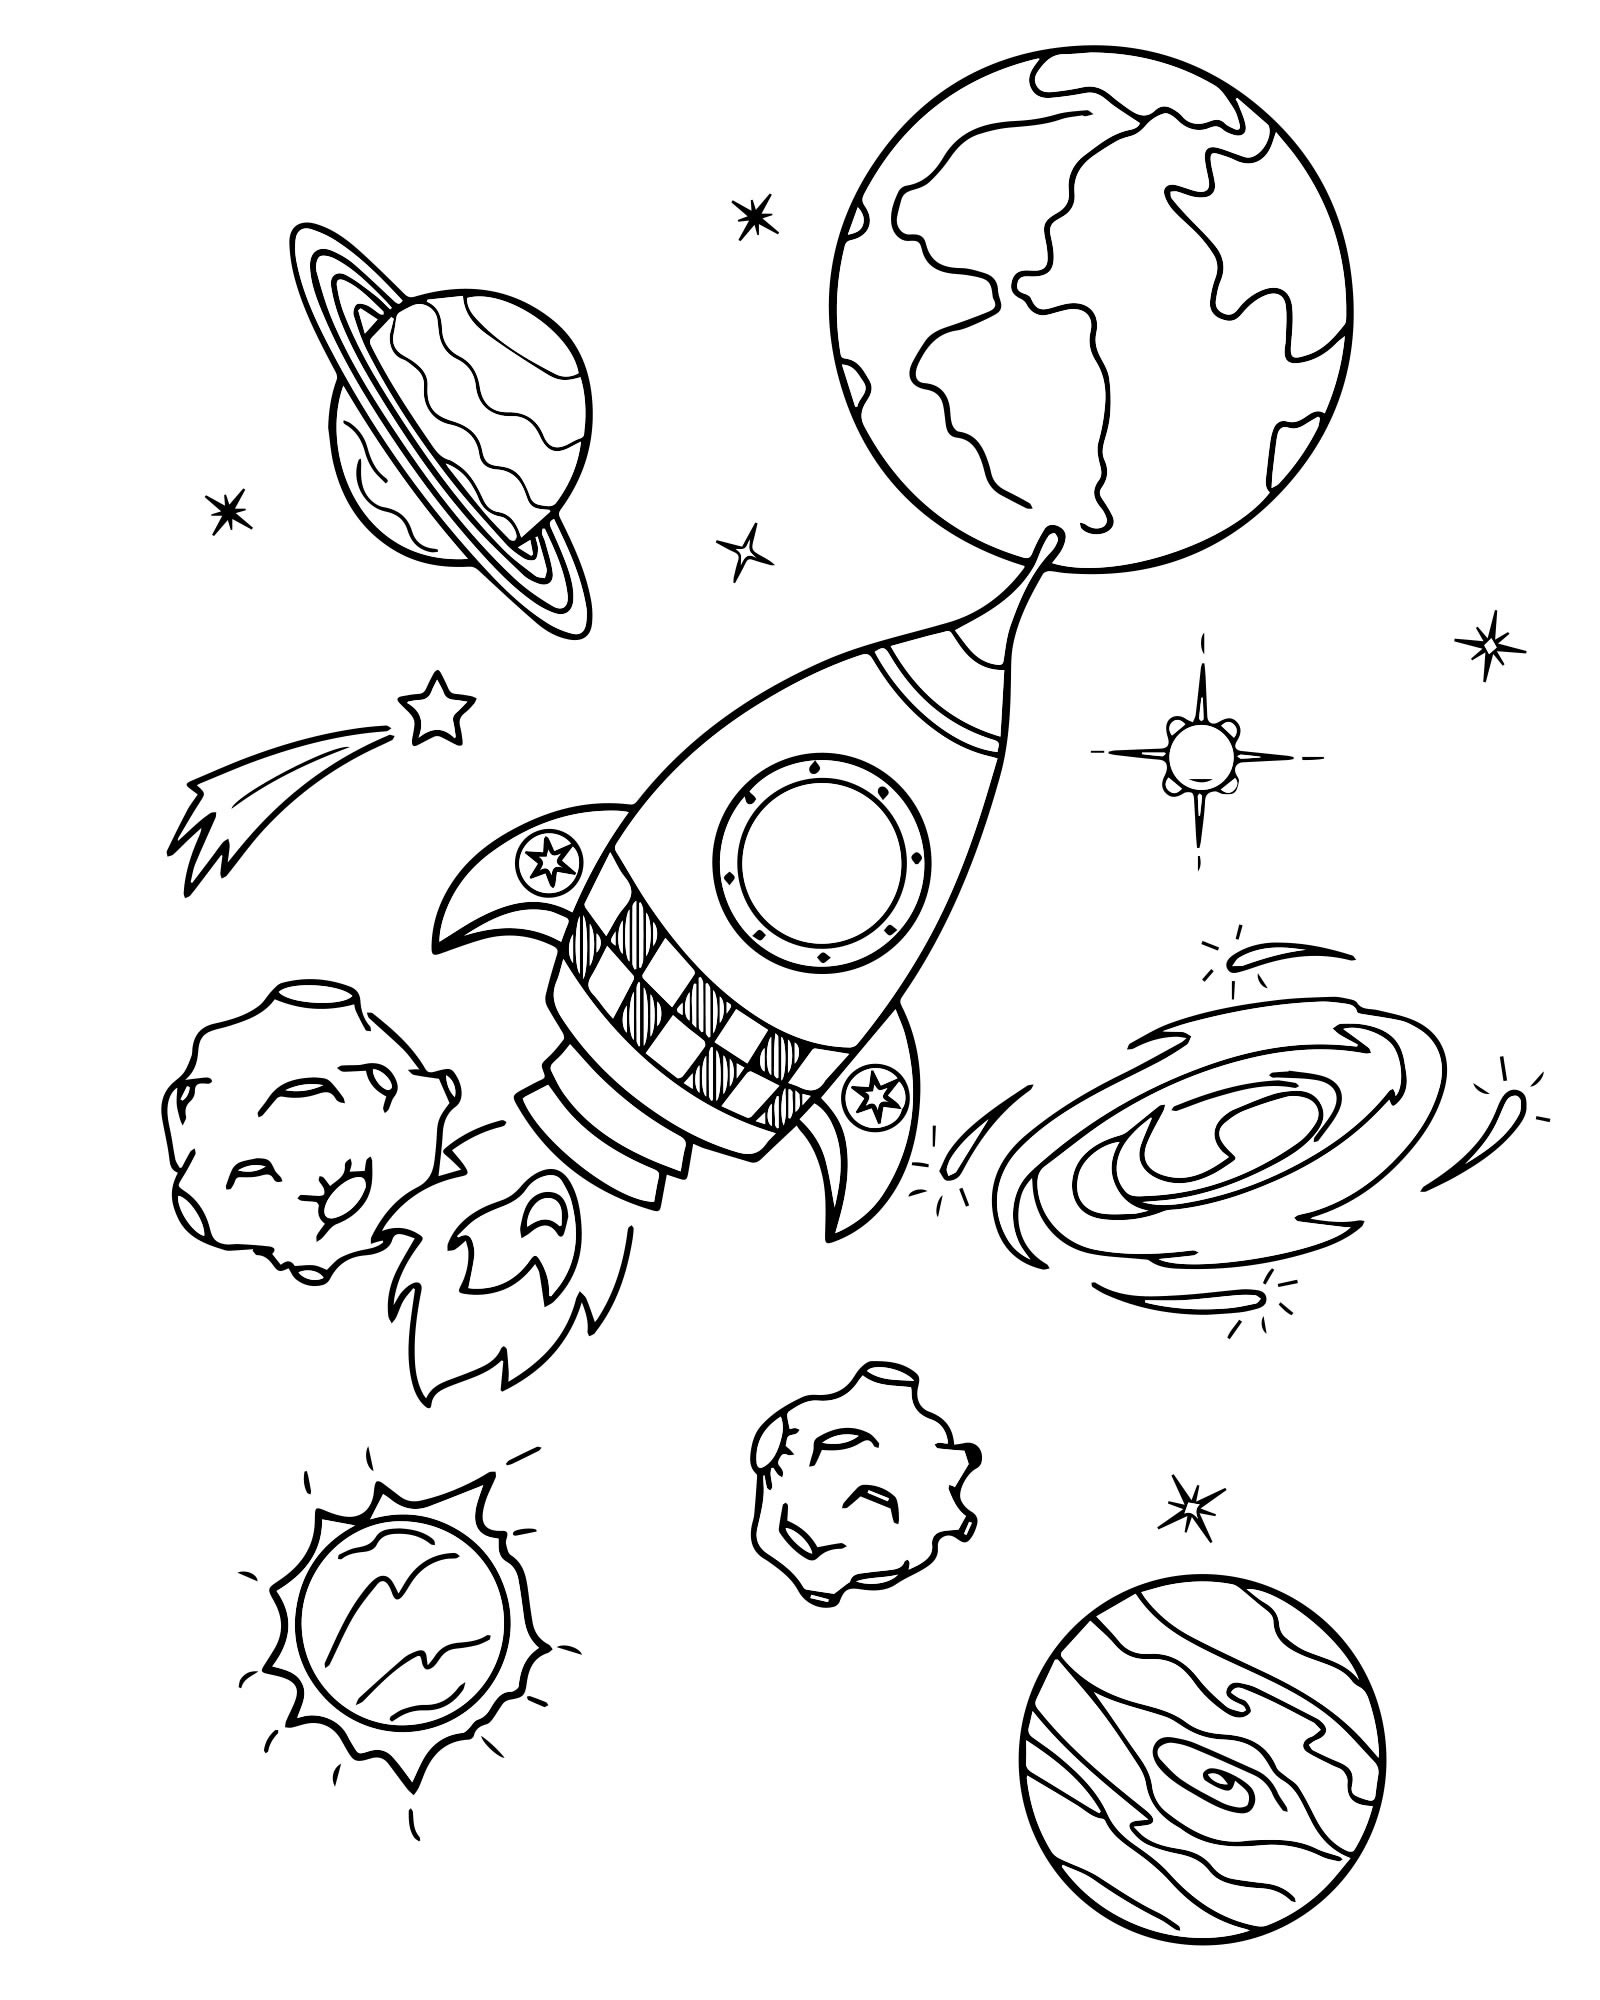 Планеты картинки для детей раскраски. Космос раскраска для детей. Раскраска. В космосе. Раскраска космос и планеты для детей. Раскраска для малышей. Космос.